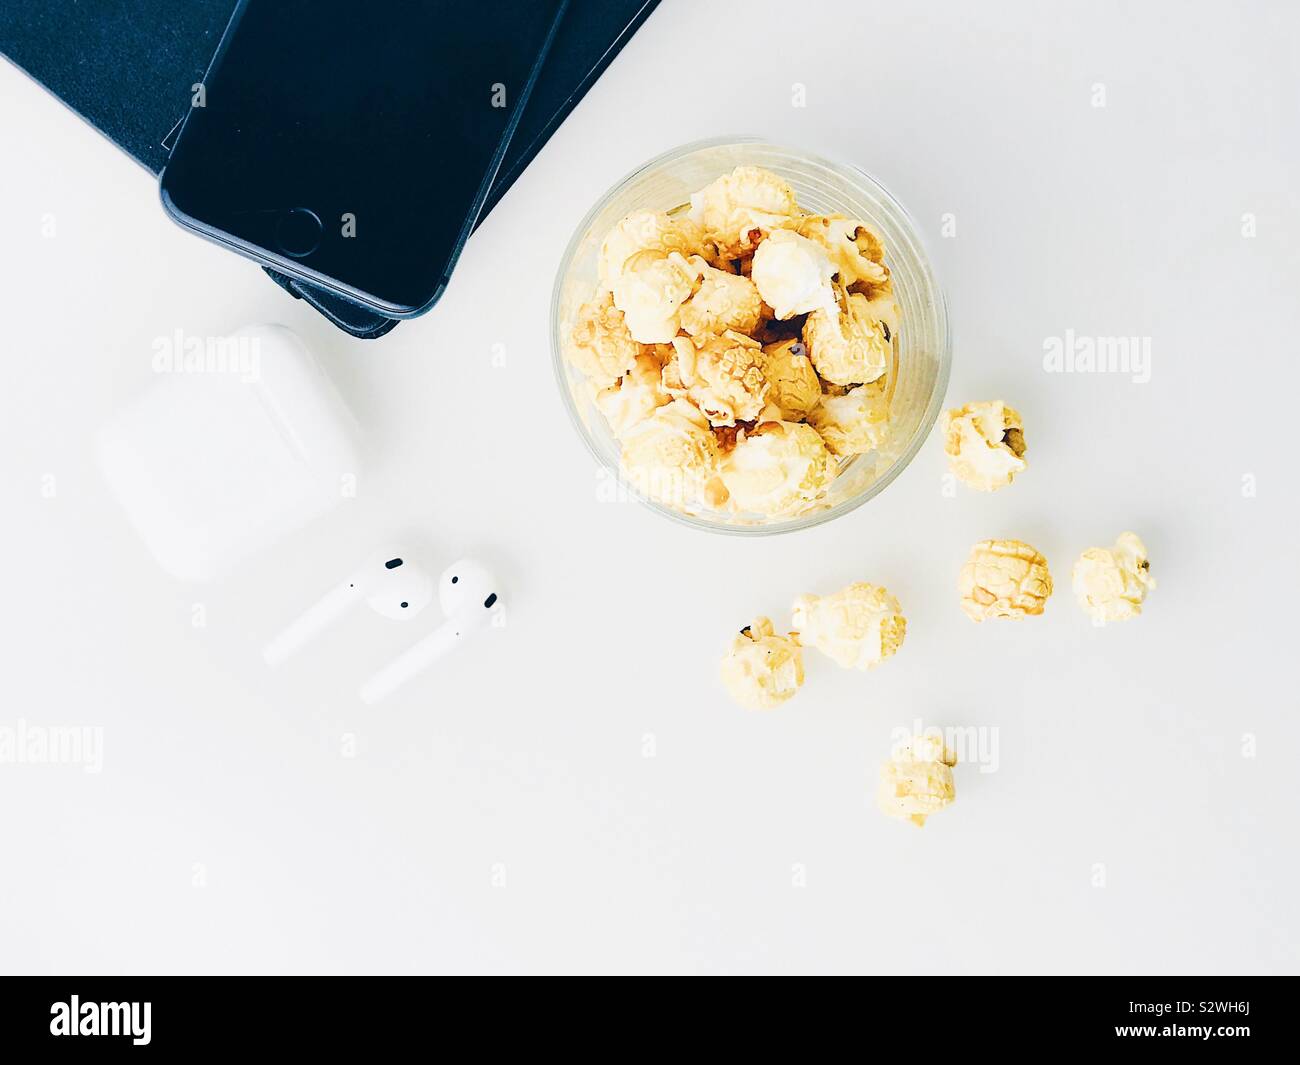 Flatlay 24 blanc de haut avec le pop-corn snack, casque blanc, ordinateur portable et téléphone mobile Banque D'Images